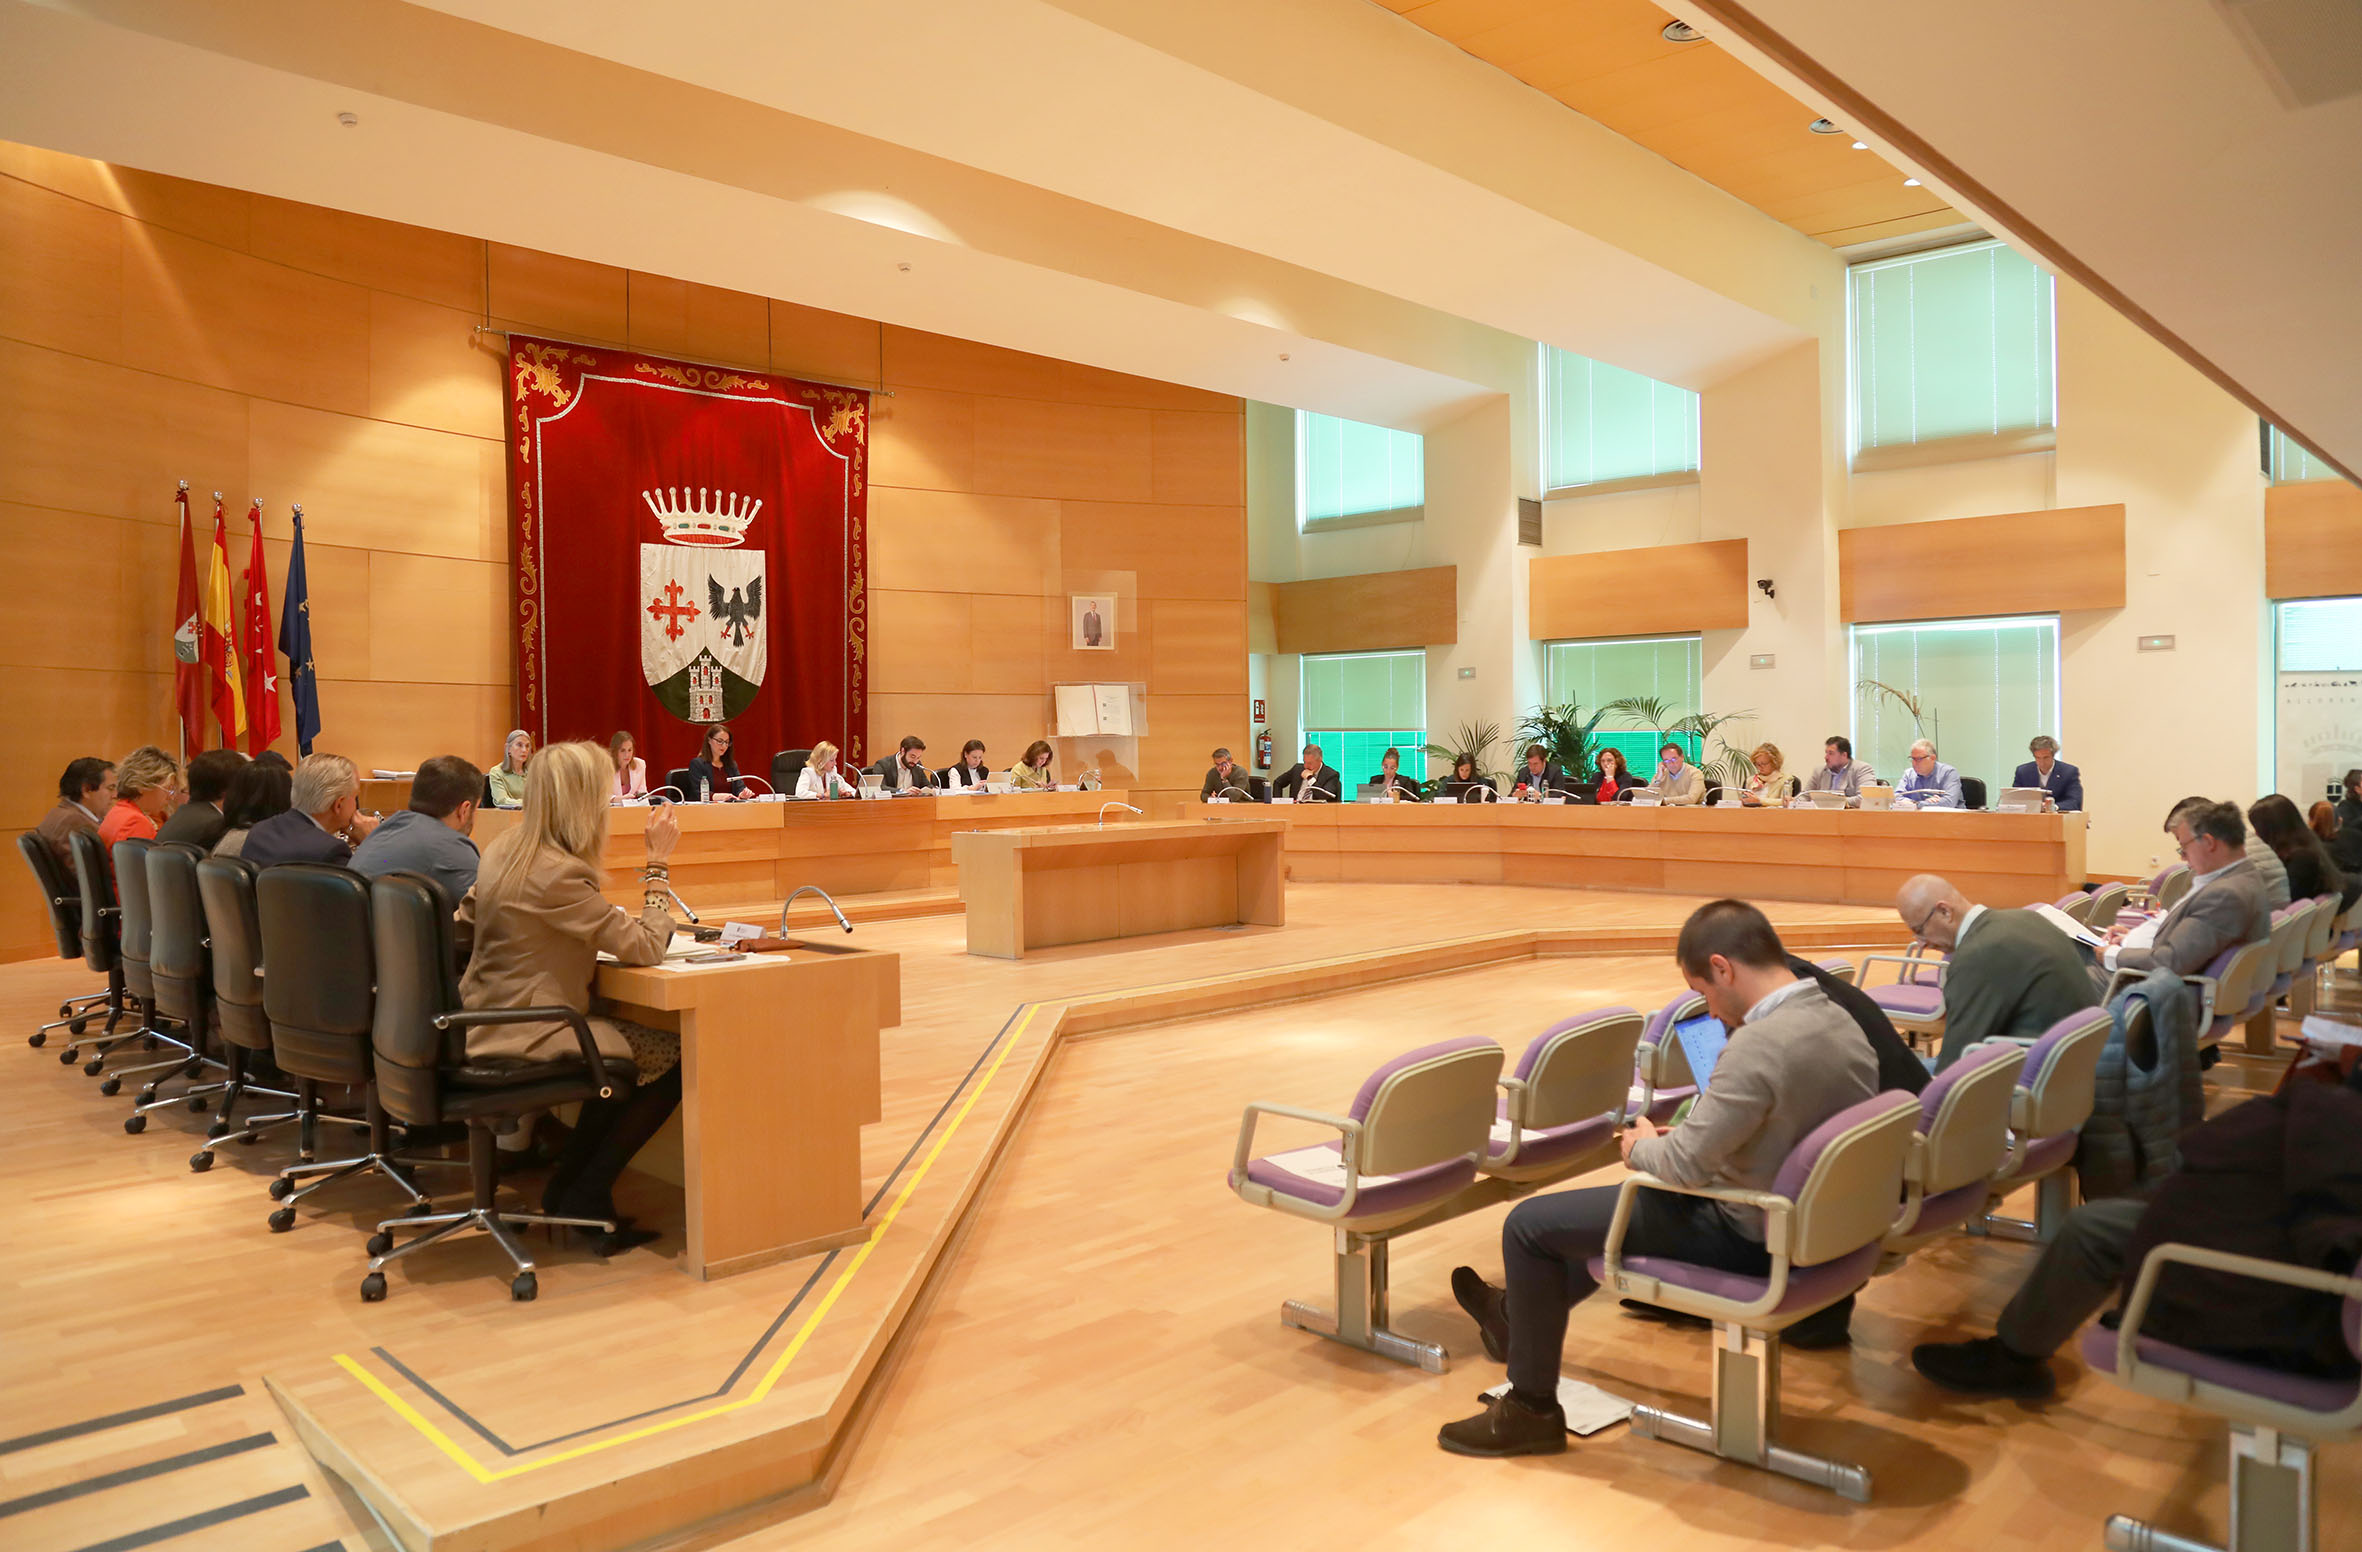 Pleno Alcobendas apoya candidatura de Ciudad Europea del Deporte 2025